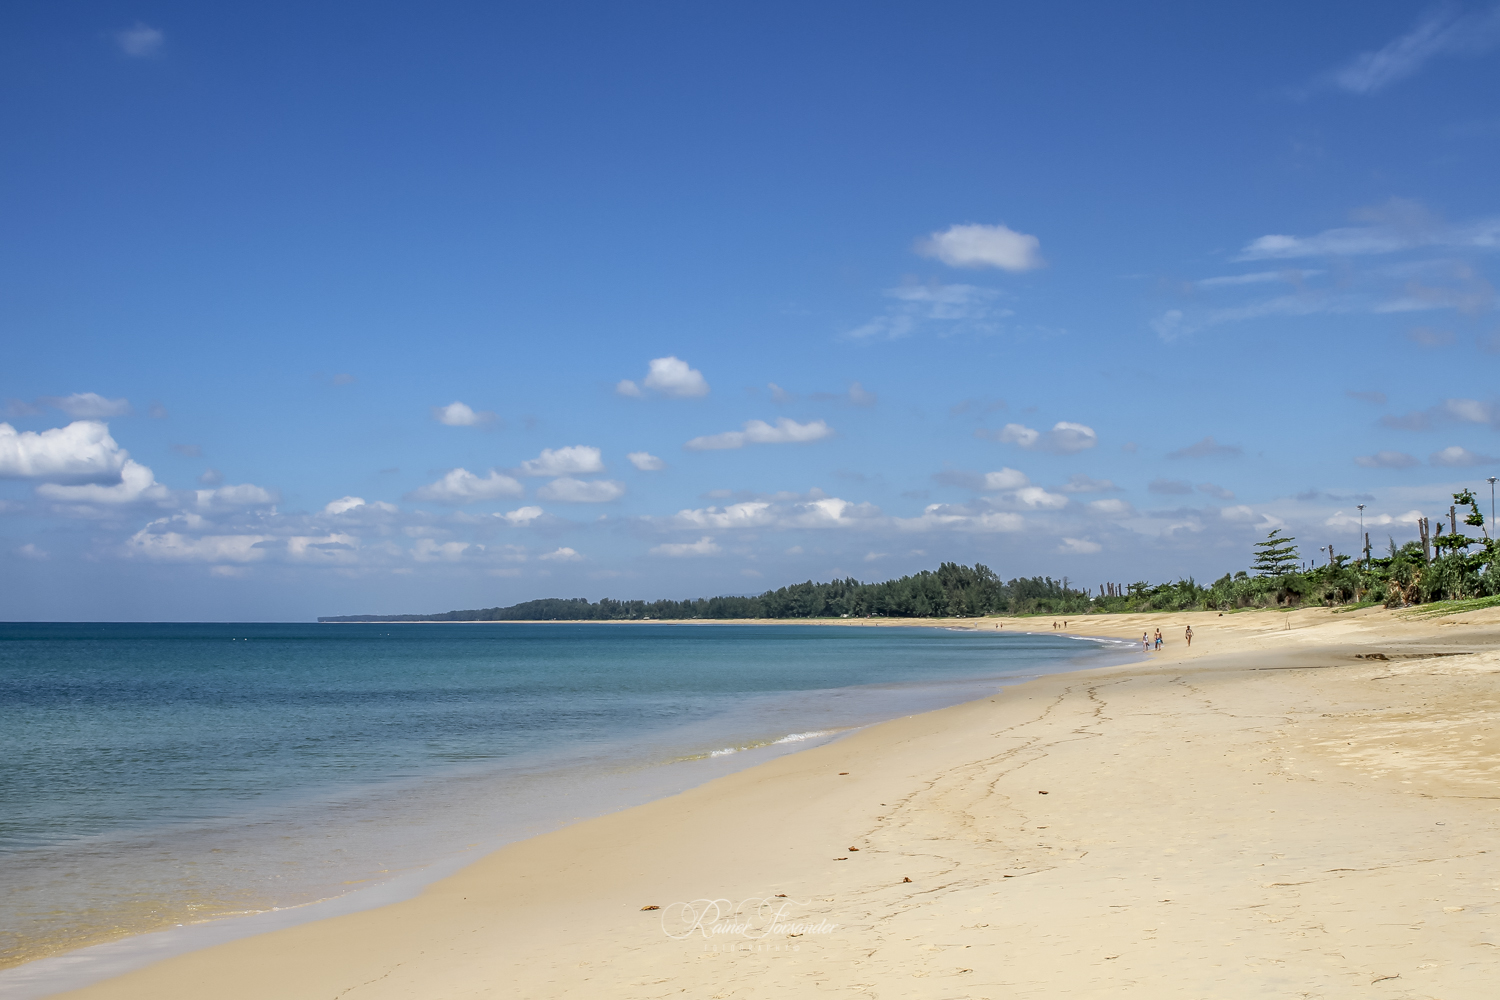 Foto af Naiyang Beach - populært sted blandt afslapningskendere